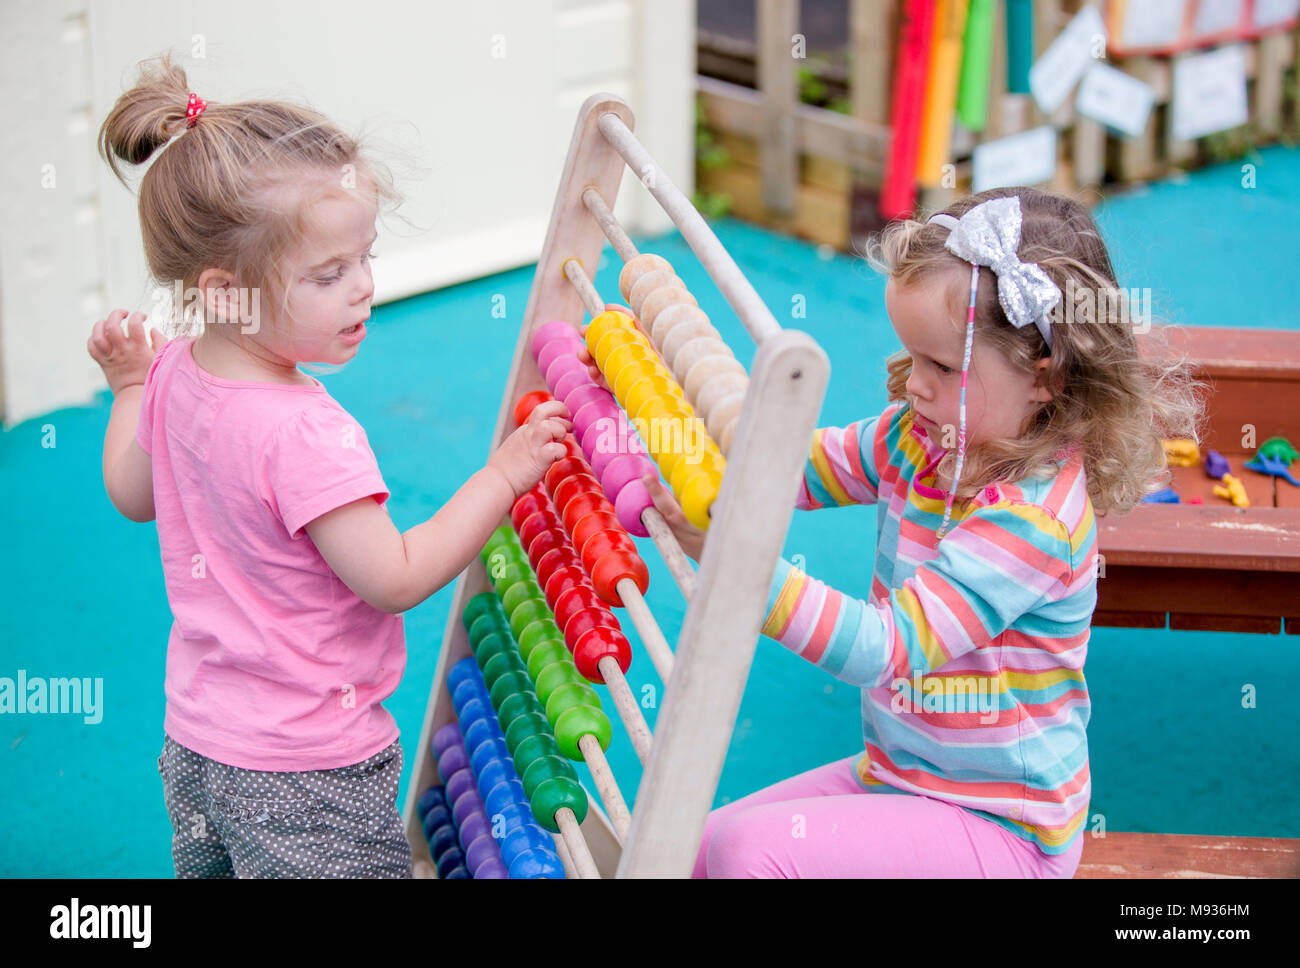 Deux jeunes filles, jouant avec un abaque à une école maternelle dans le Warwickshire, Royaume-Uni Banque D'Images